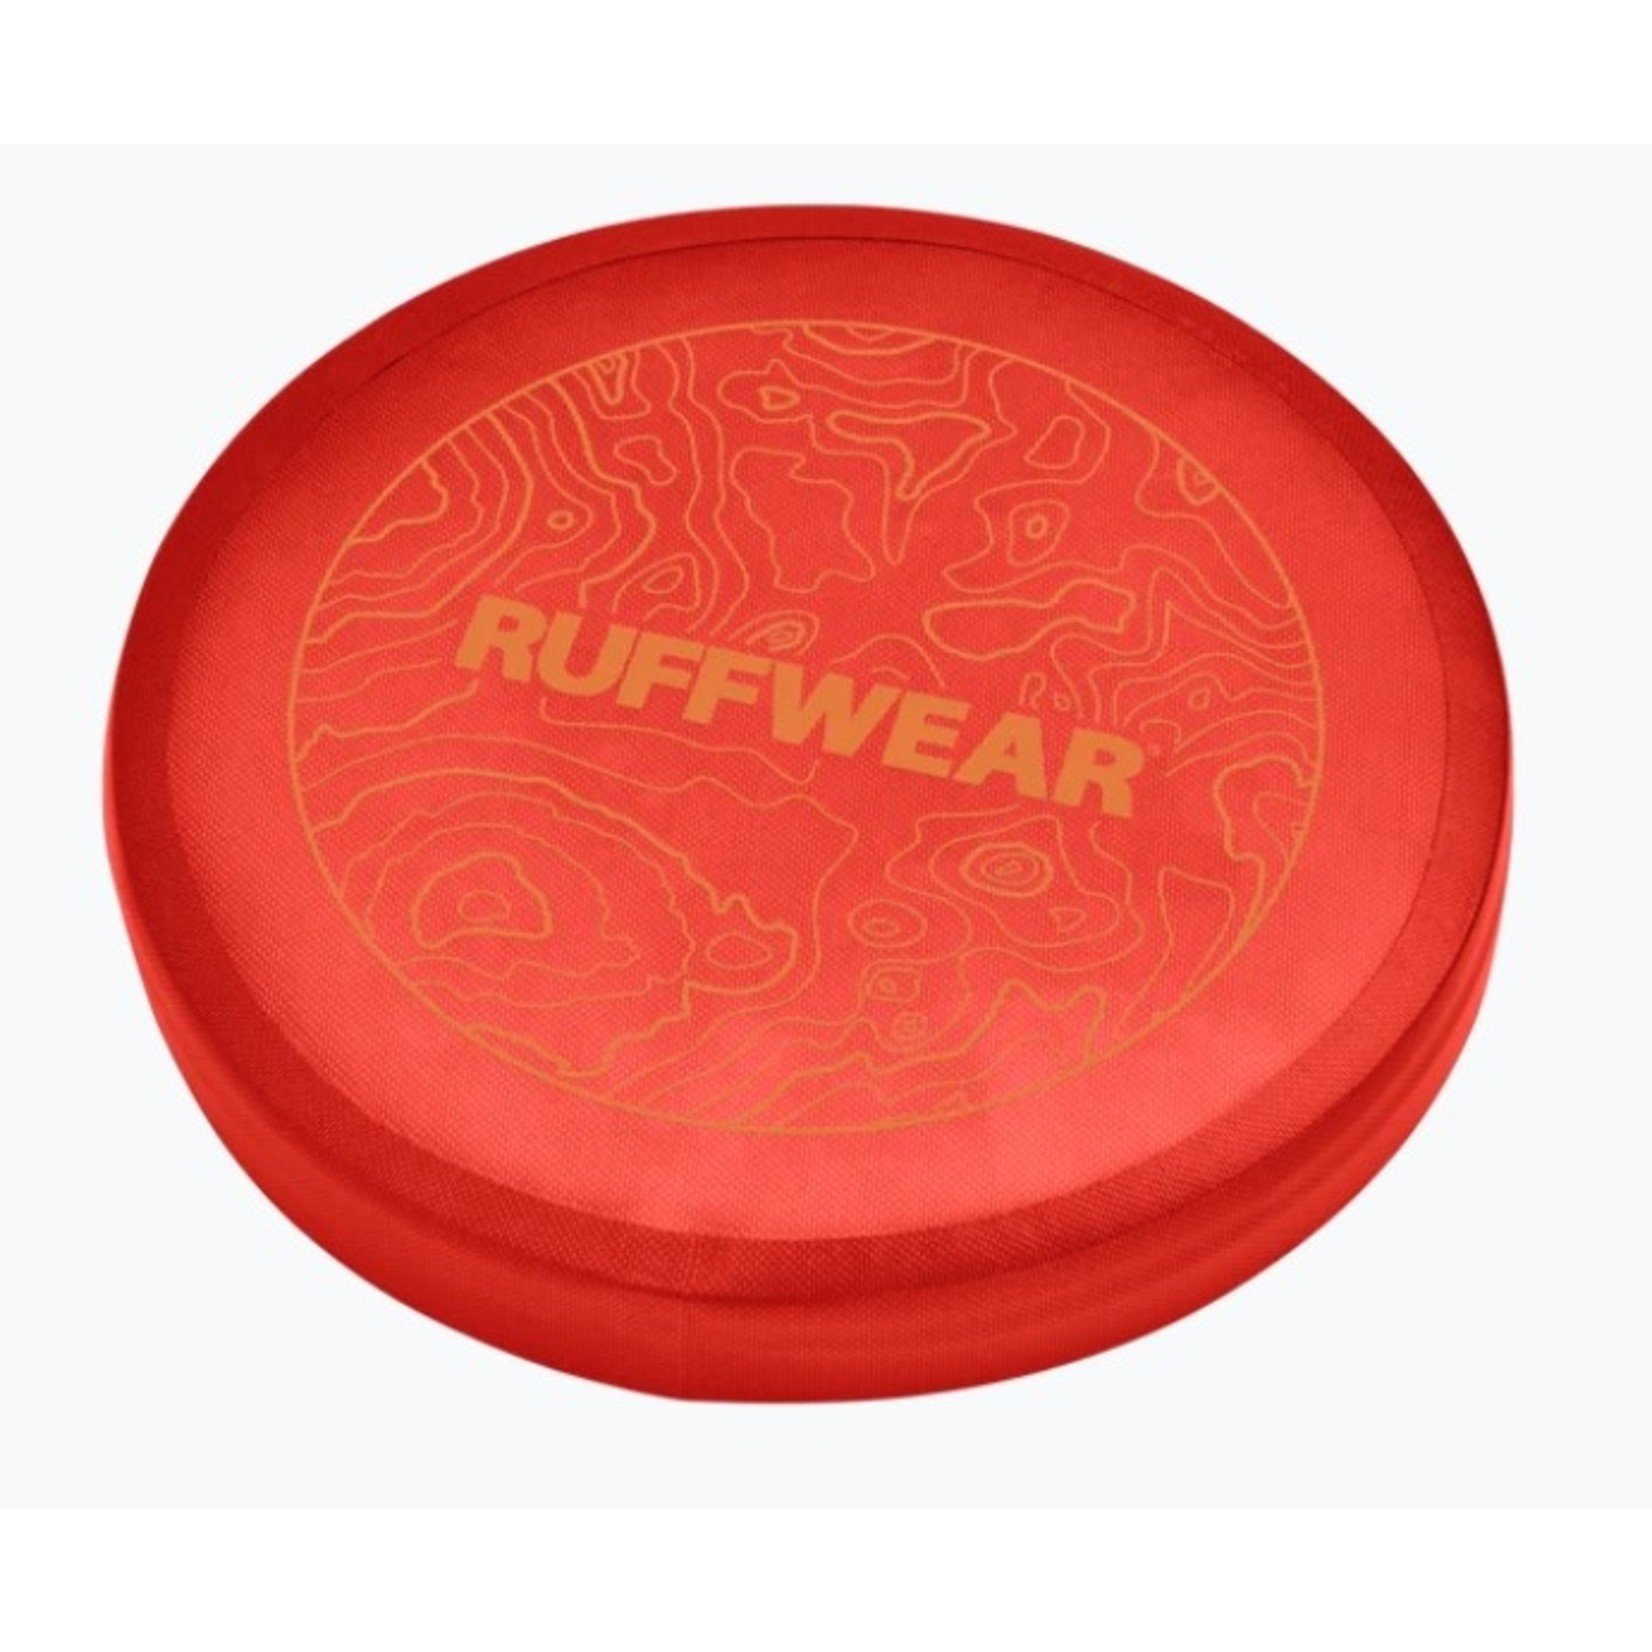 Ruffwear RUFFWEAR Camp Flyer Dog Toy